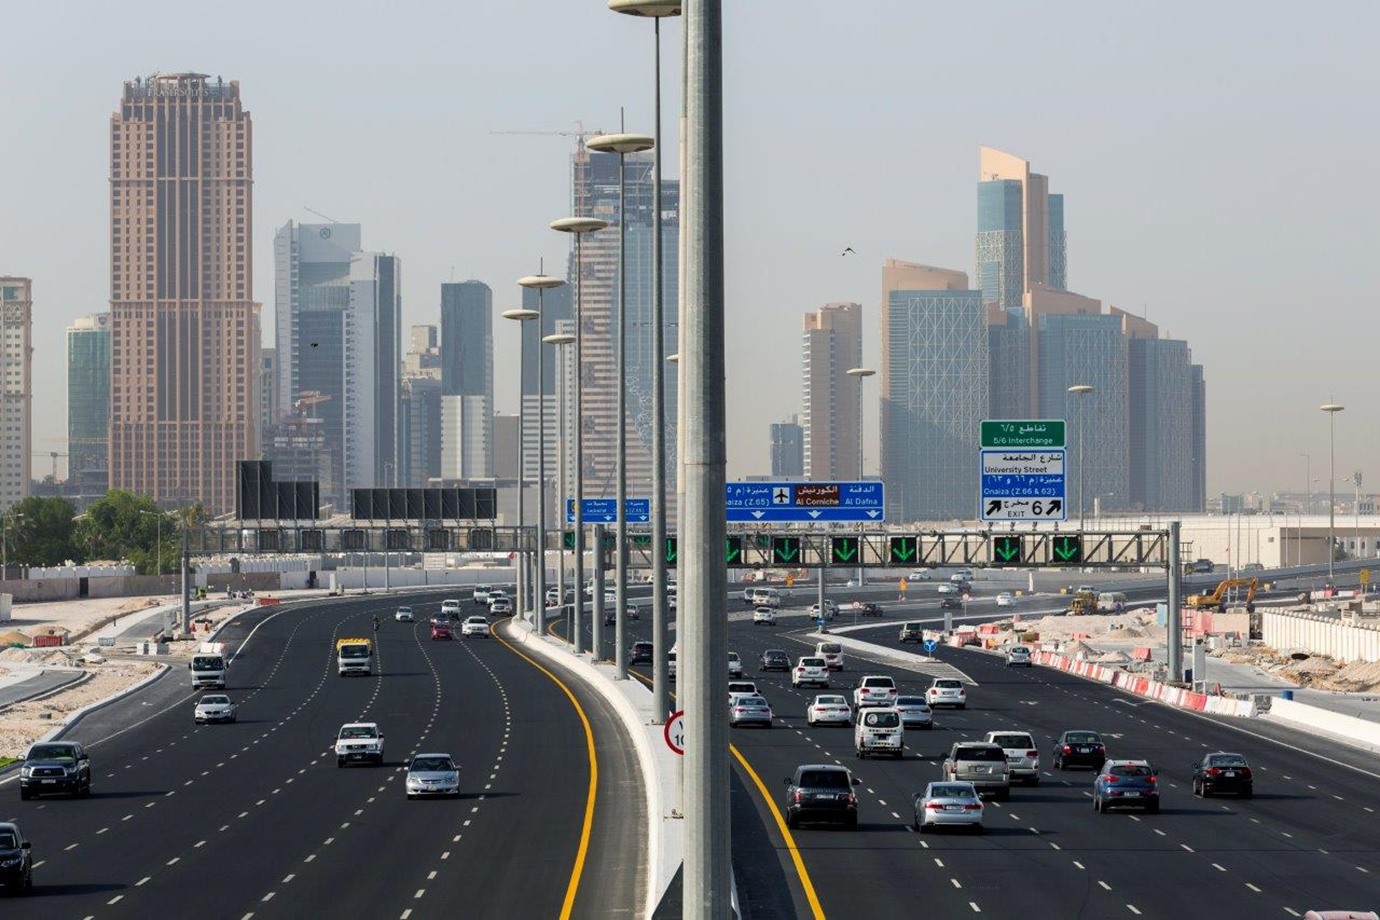 بمناسبة العام الدراسي الجديد أشغال تفتتح العديد من الطرق الجديدة في قطر